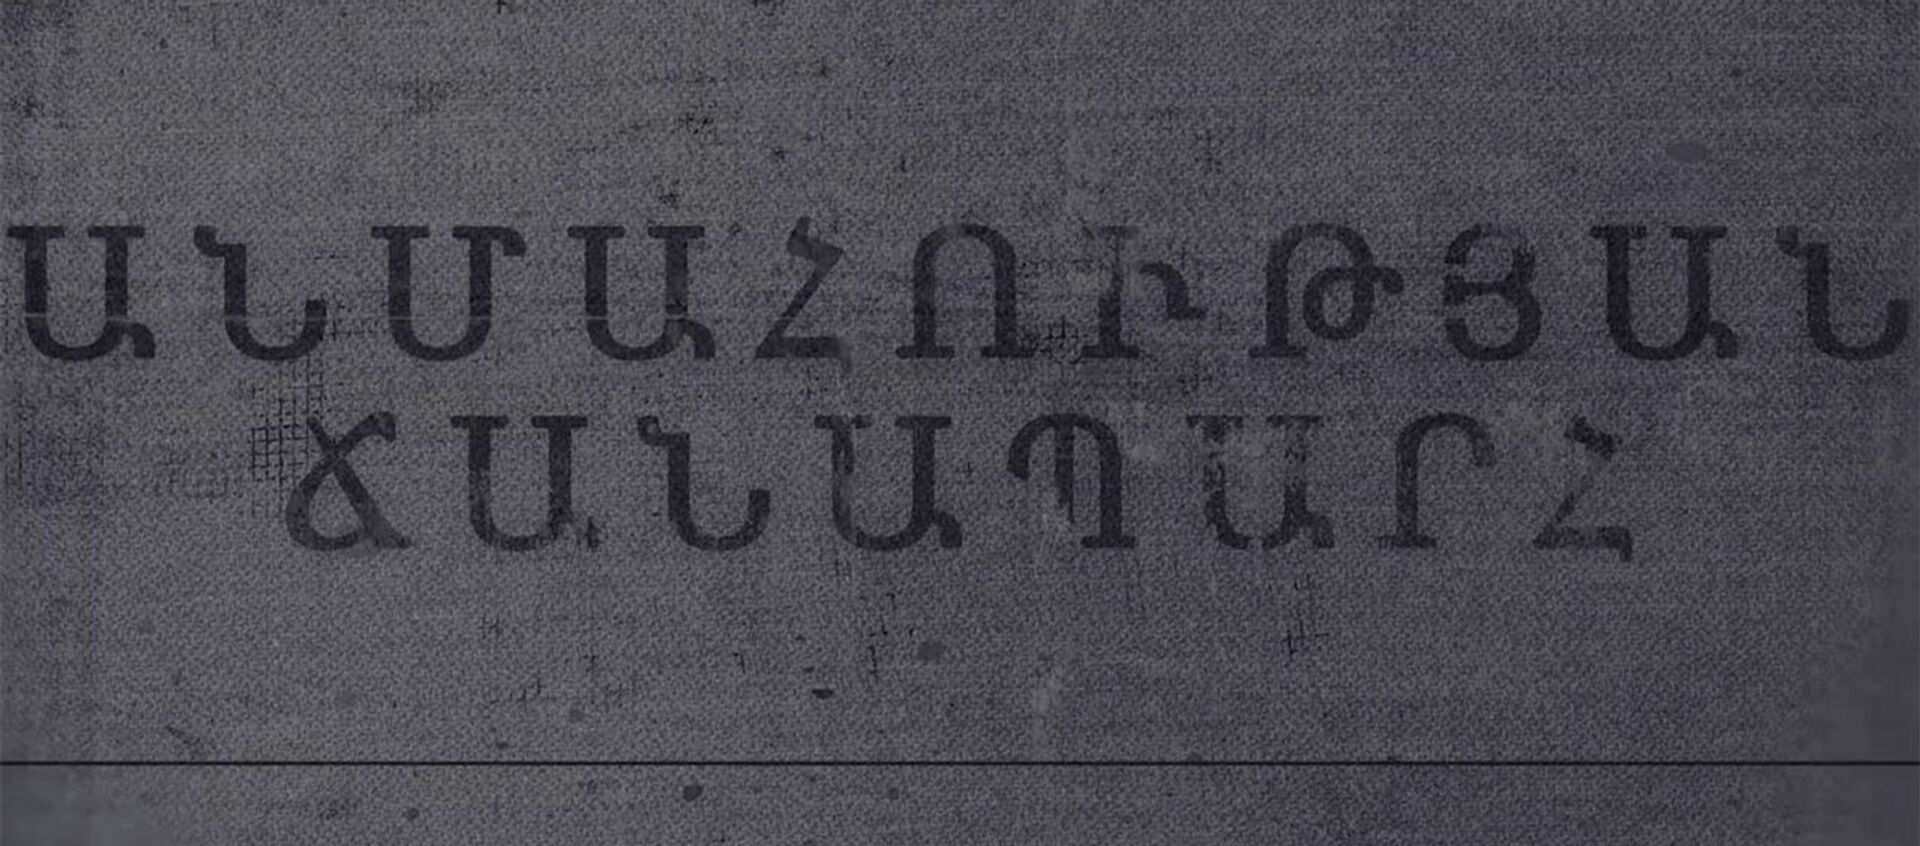 Անմահության ճանապարհ․ Թաթուլ Օթարյան - Sputnik Արմենիա, 1920, 23.01.2021